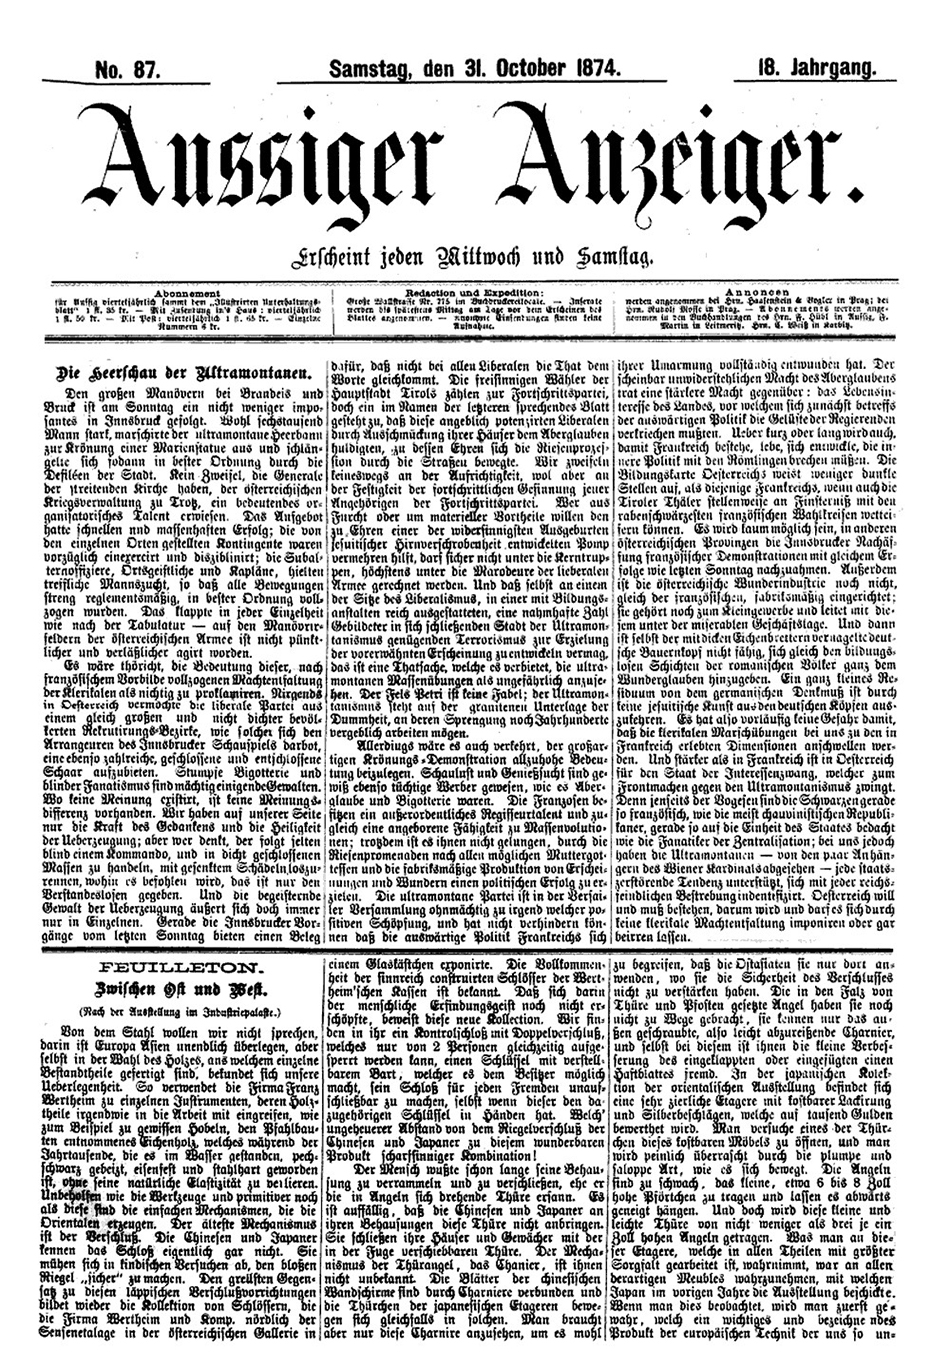 Aussiger Anzeiger, Samstag den 31. Oktober 1874, Titelseite